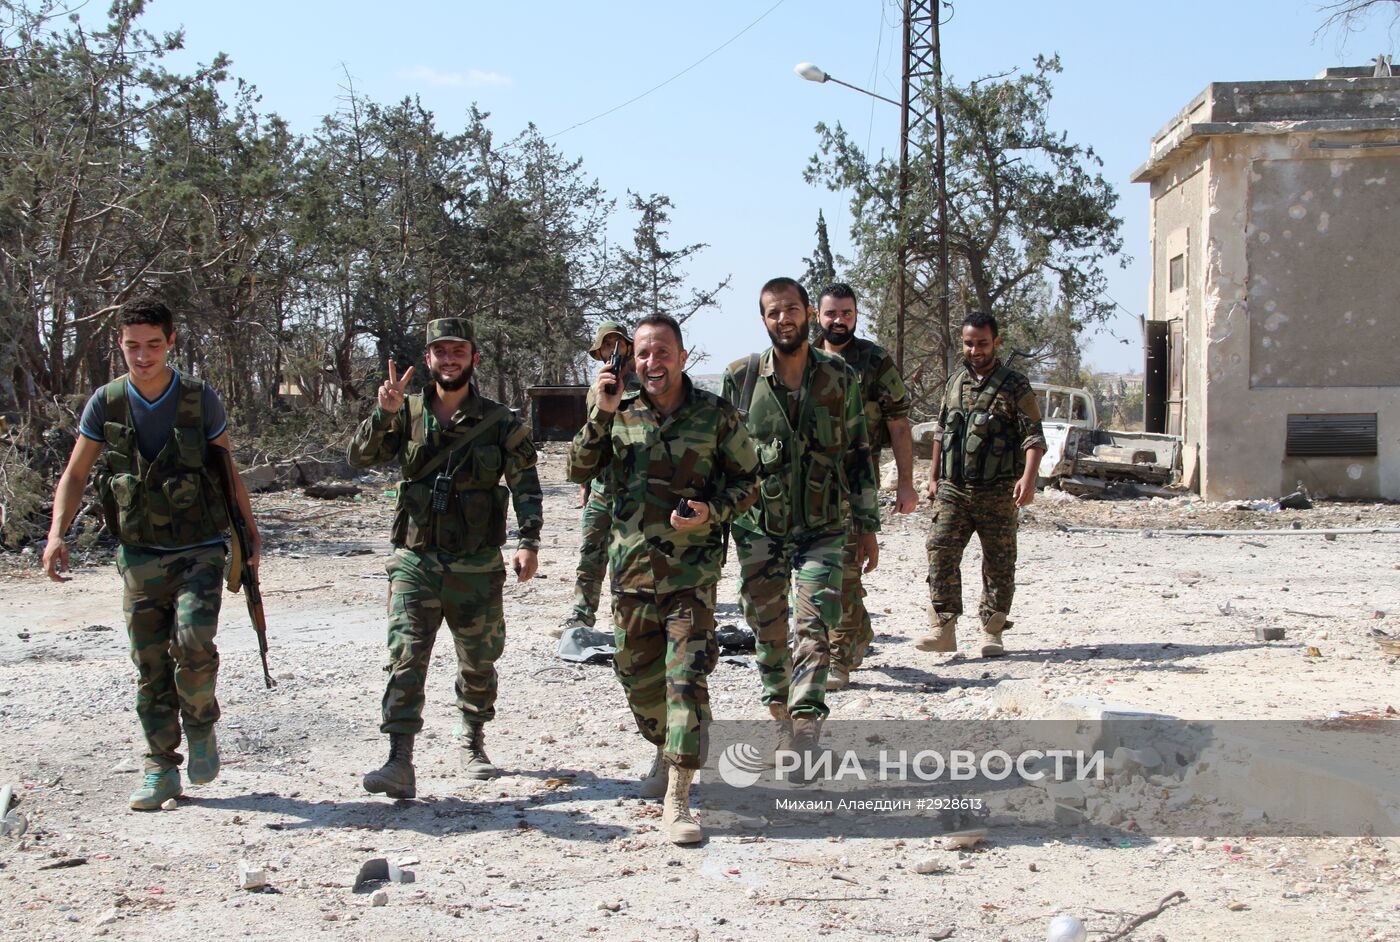 Сирийская армия освободила от боевиков территорию военных училищ в Алеппо